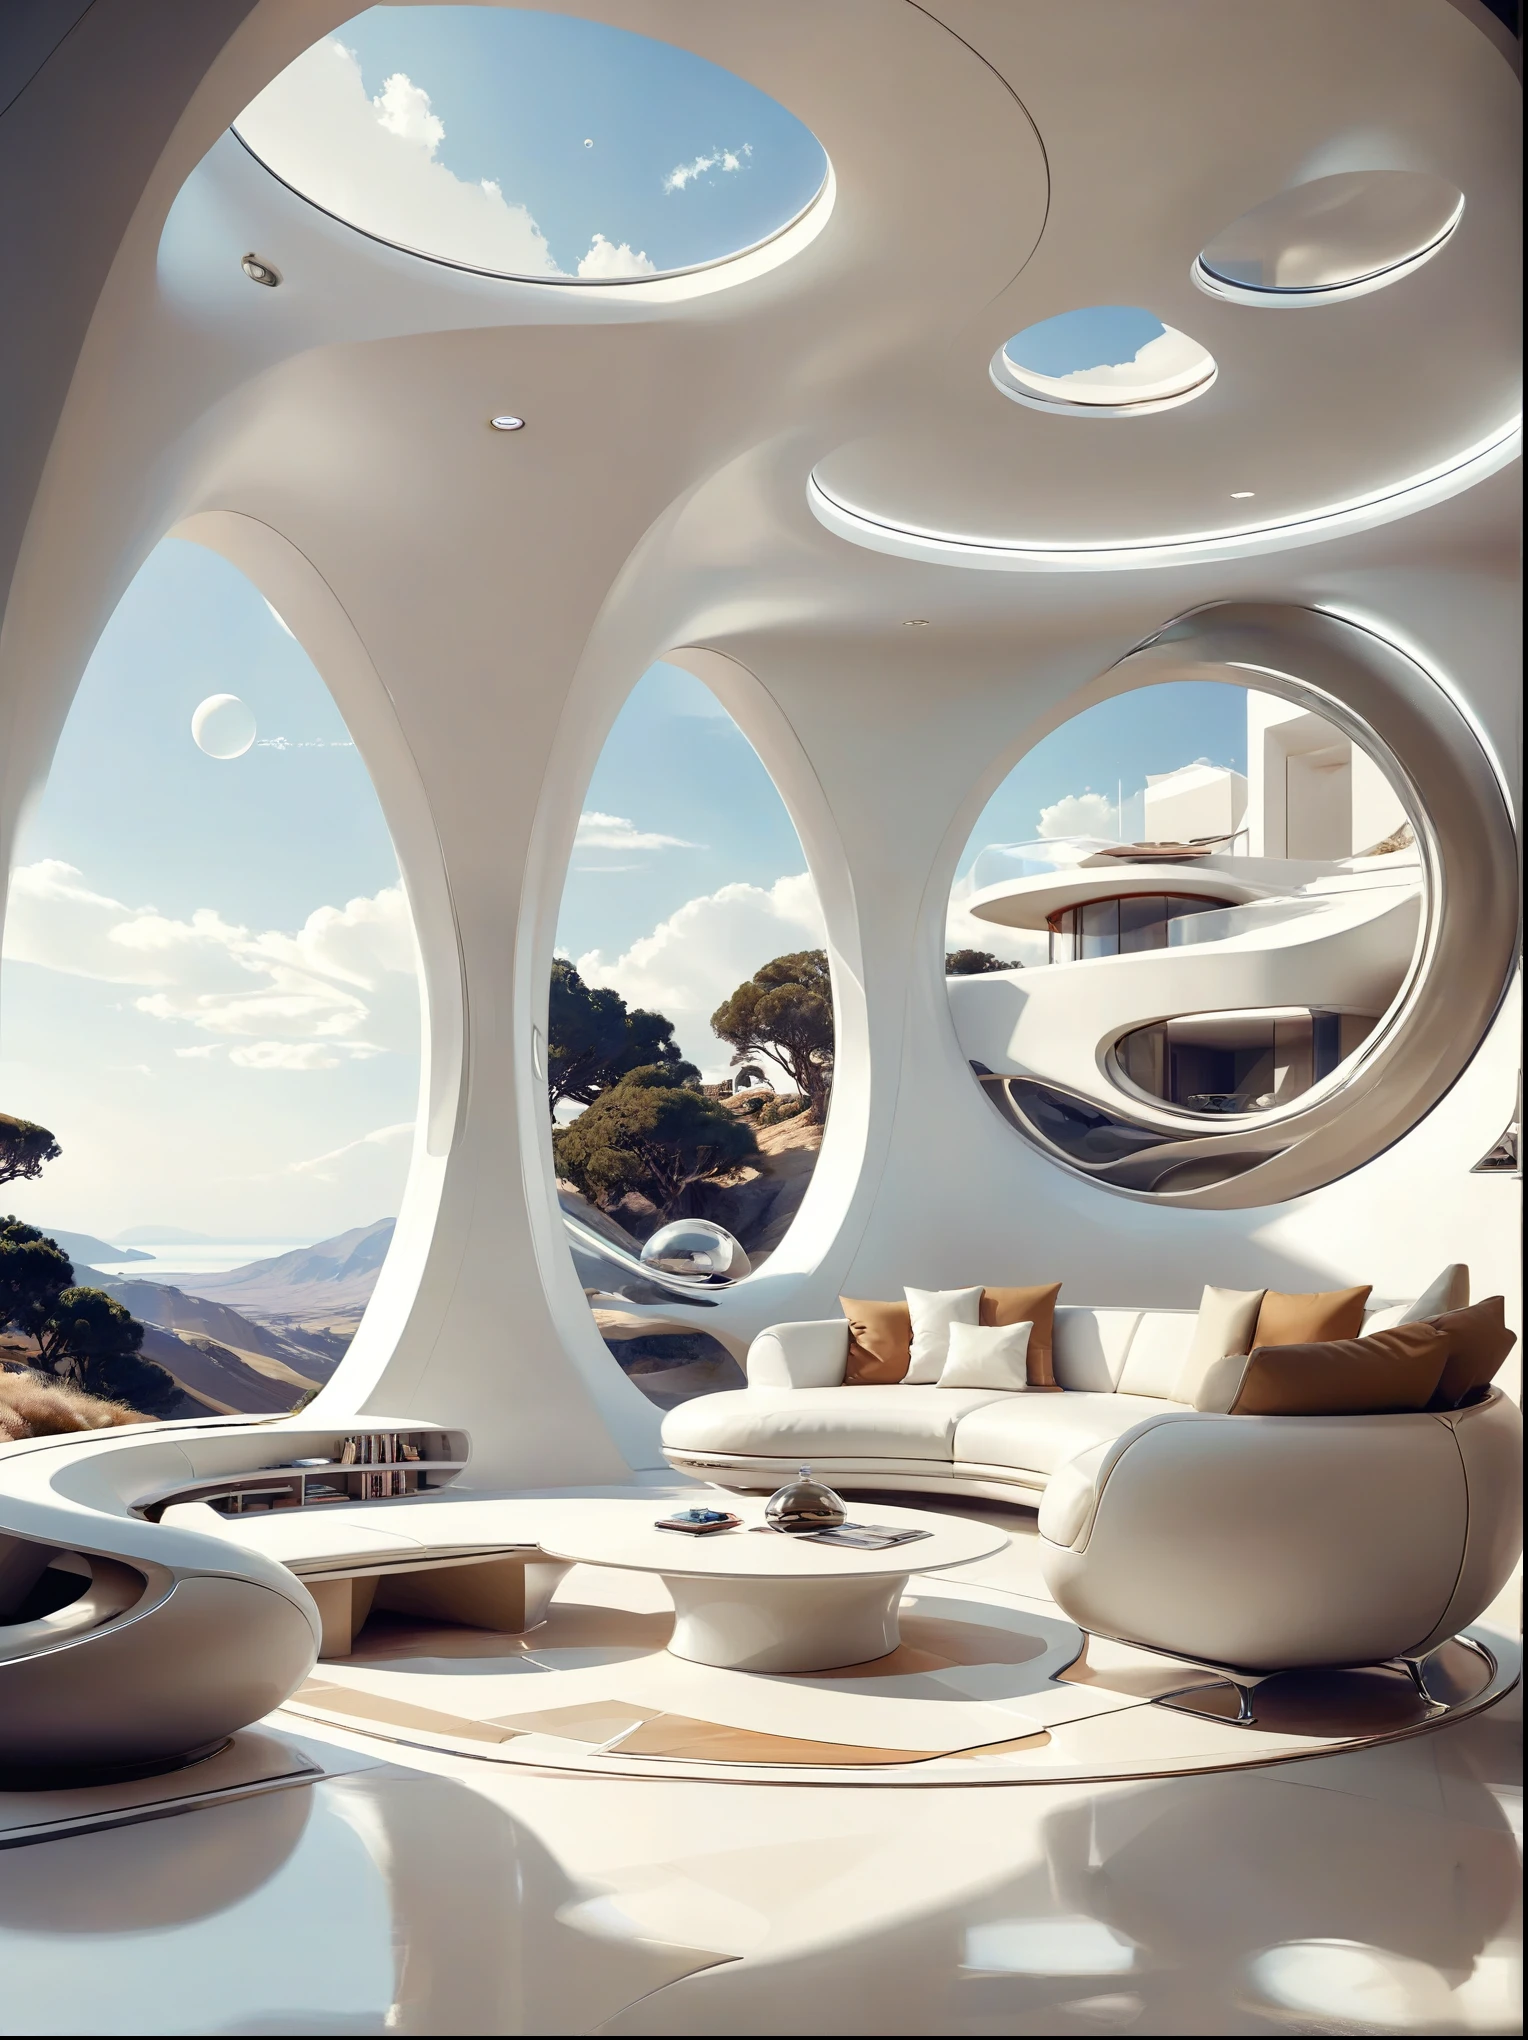 未來家居的客廳研究概念融合了有機流動性、圓形和幾何形狀，並運用藝術想像力渲染房屋和風景, 純白科技風格，寬敞的室內空間